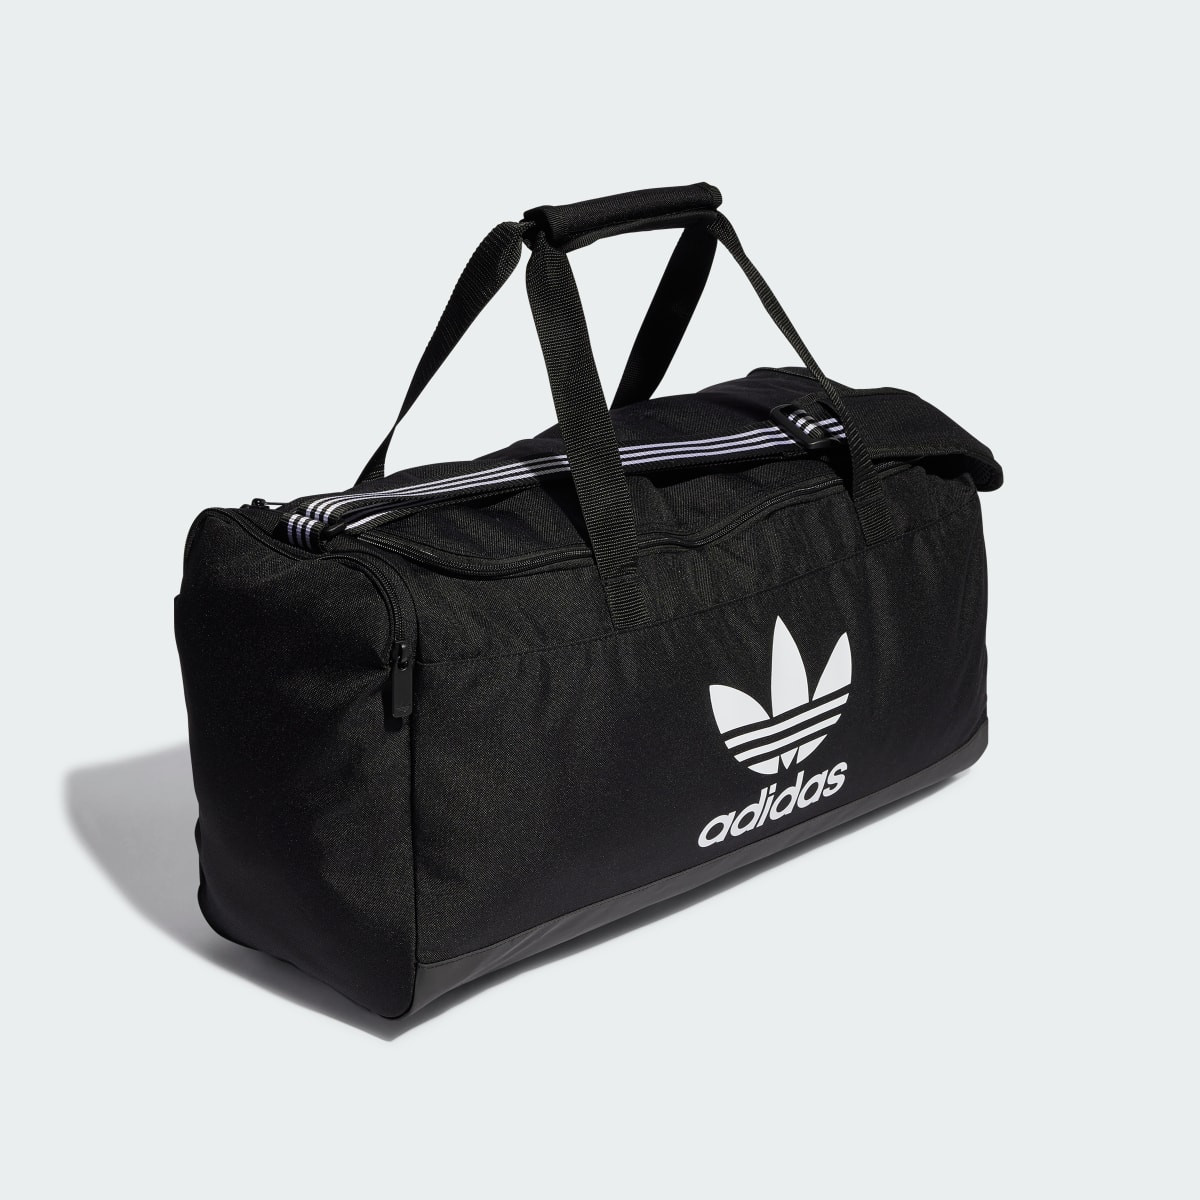 Adidas Duffel Bag. 4